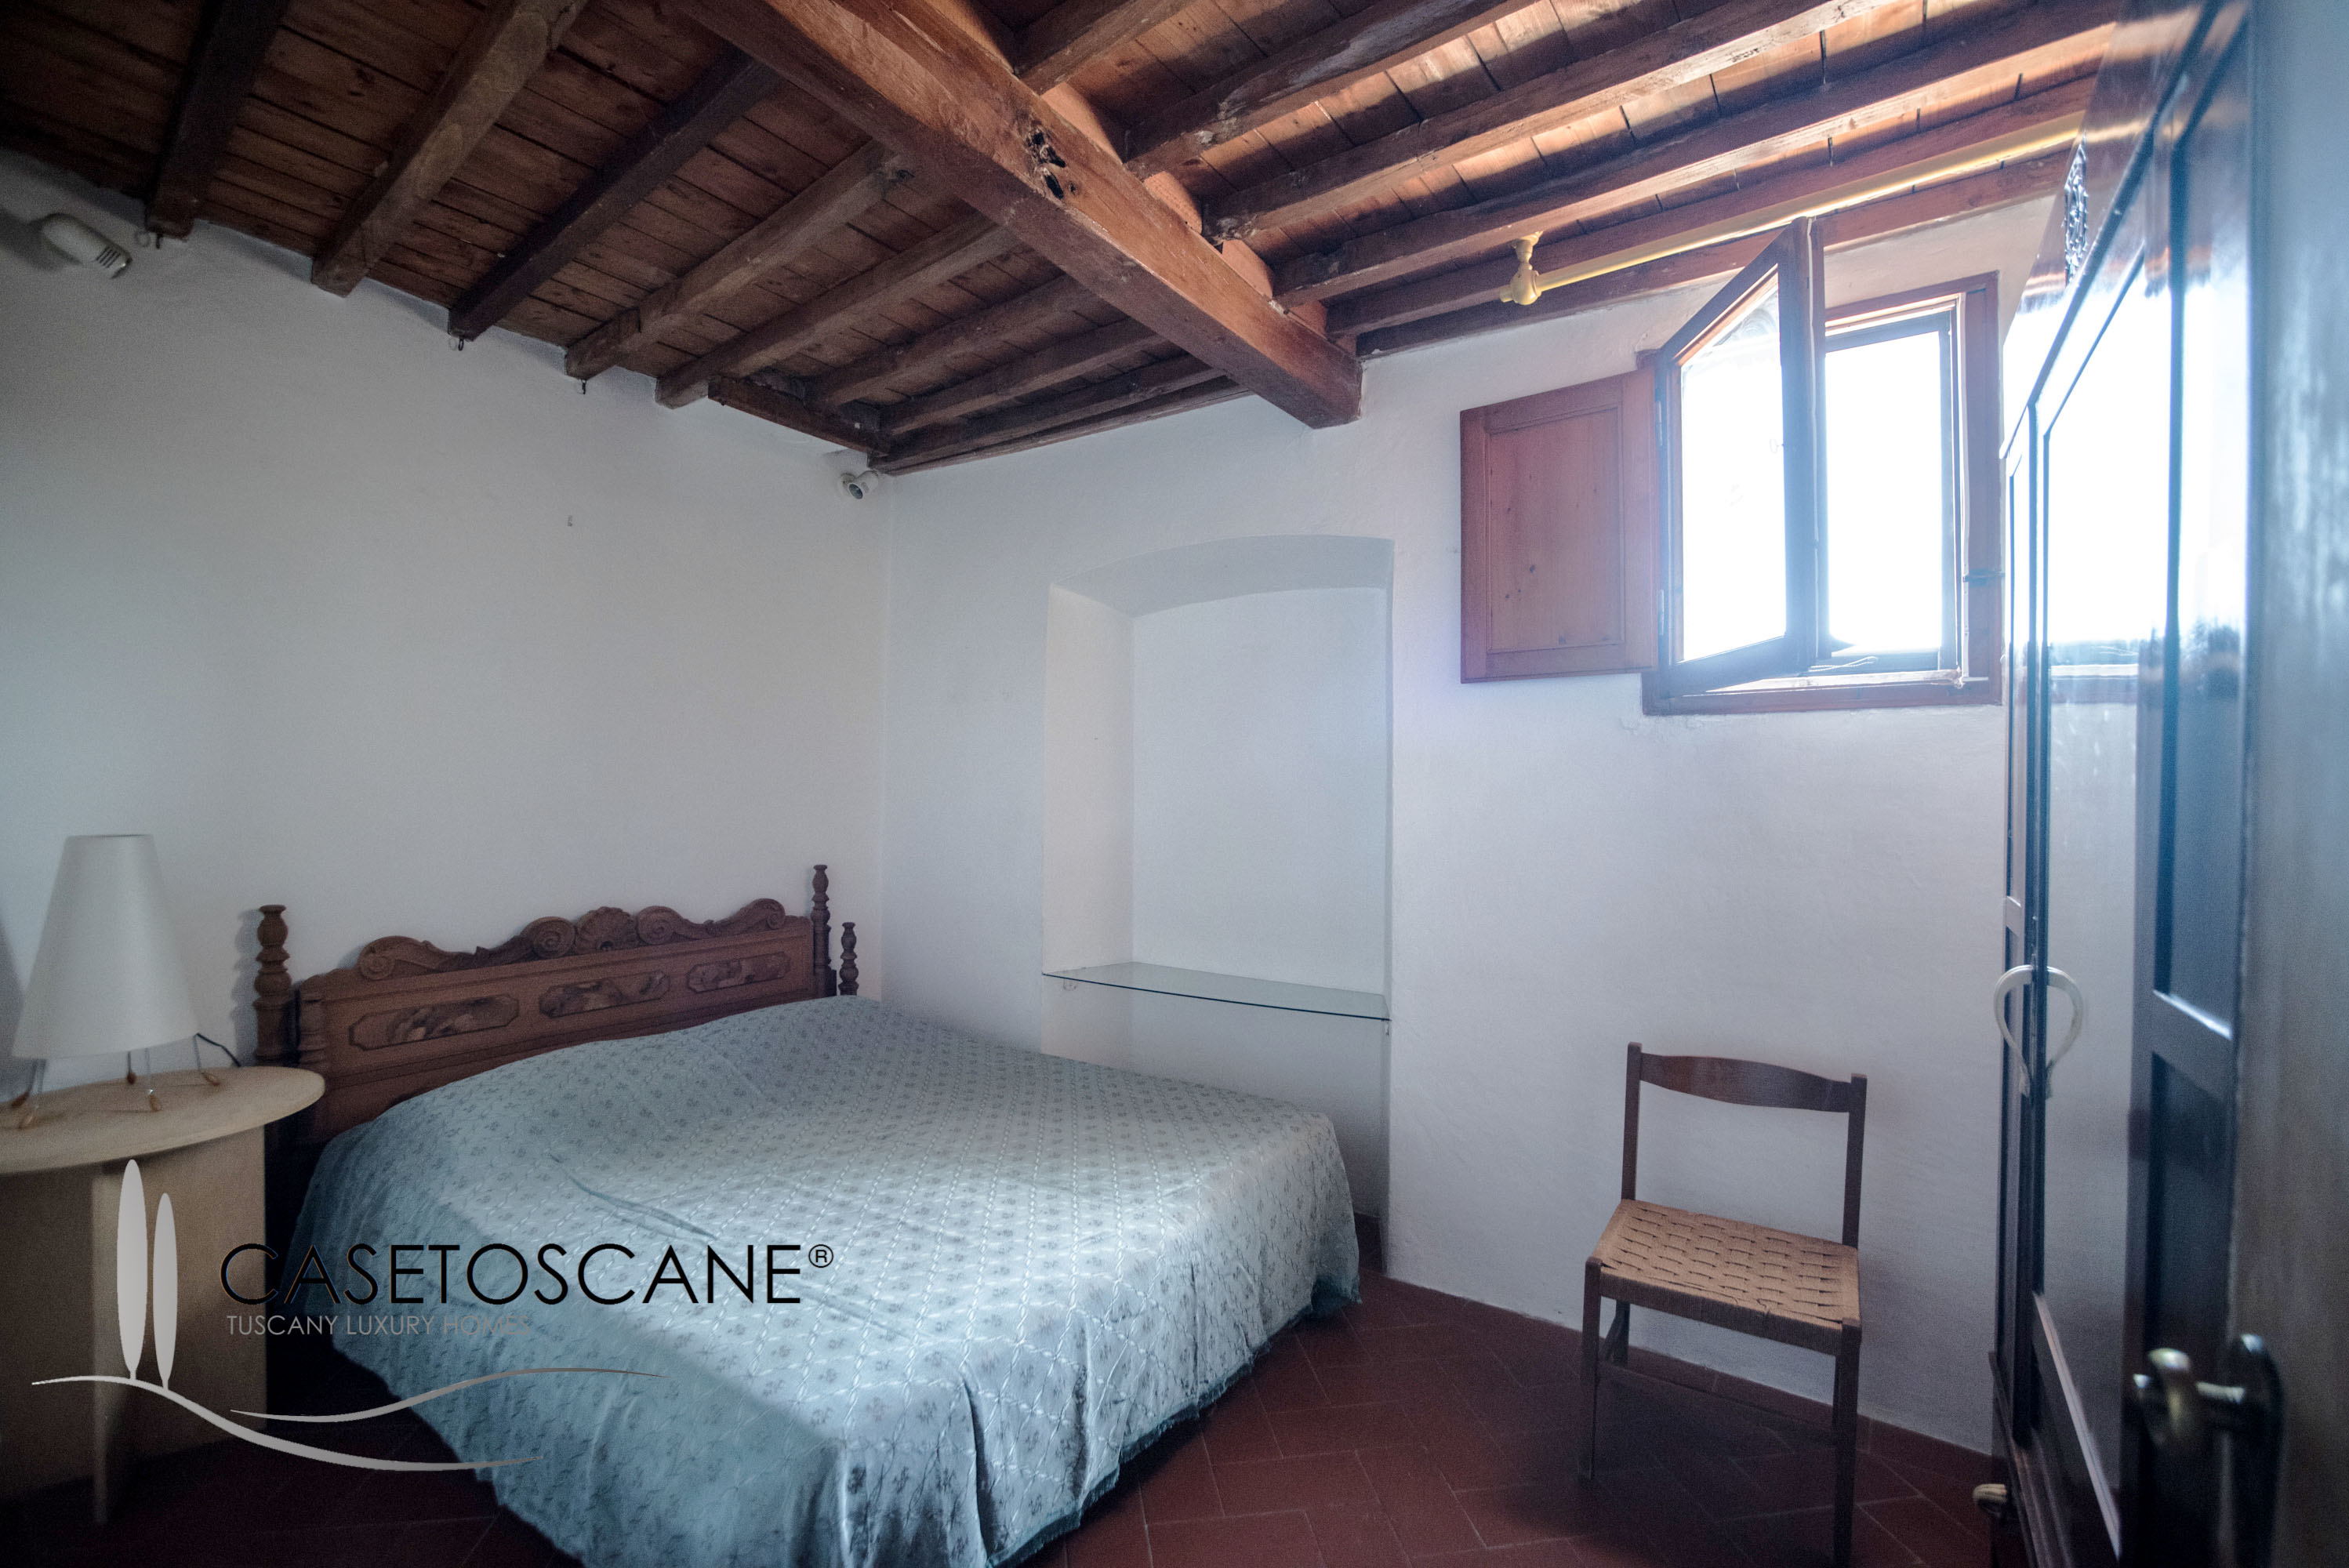 2453 - Bellissimo appartamento ristrutturato al secondo piano (ultimo) in antico palazzo nel centro storico di Bucine (AR).